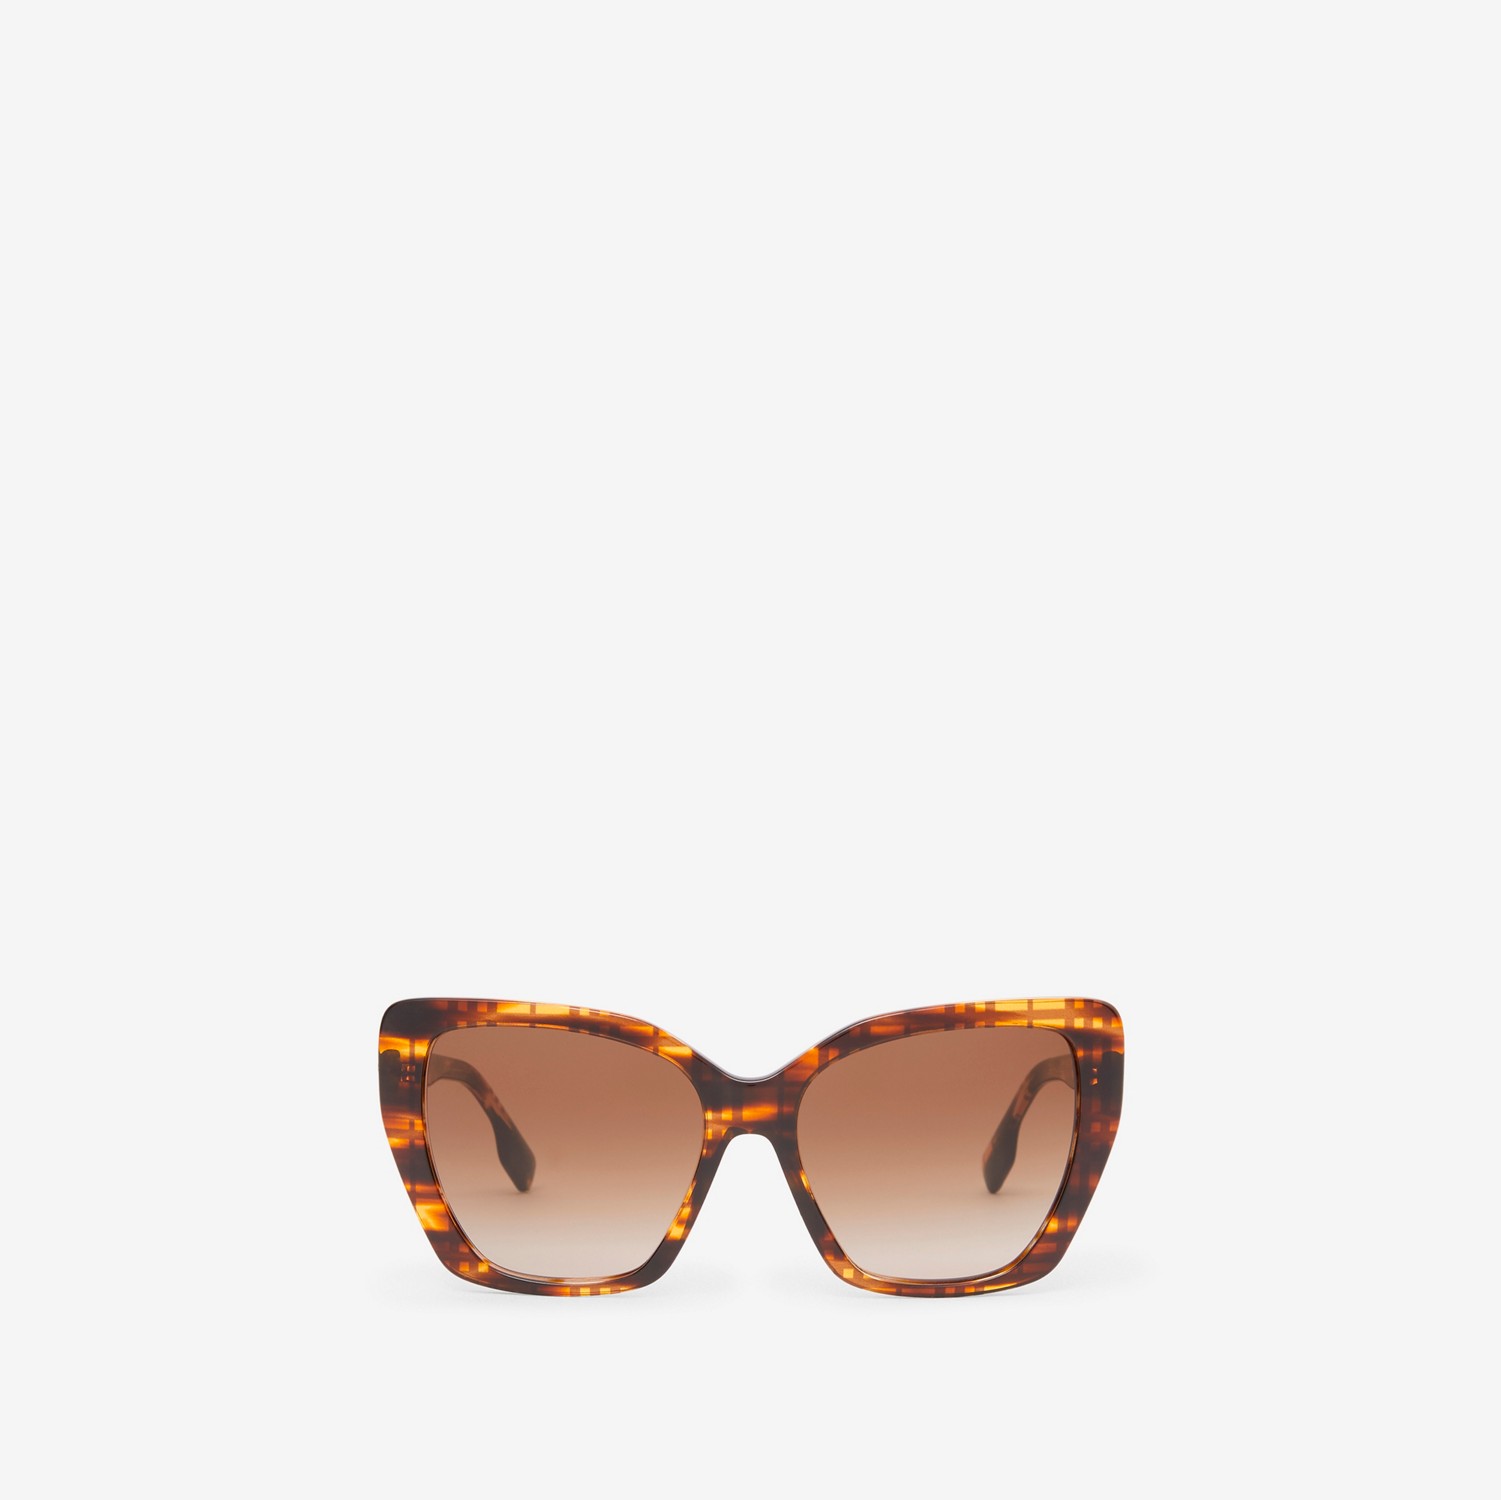 Check Cat-eye Frame Sunglasses in Bright Tortoiseshell - Women | Burberry® Official